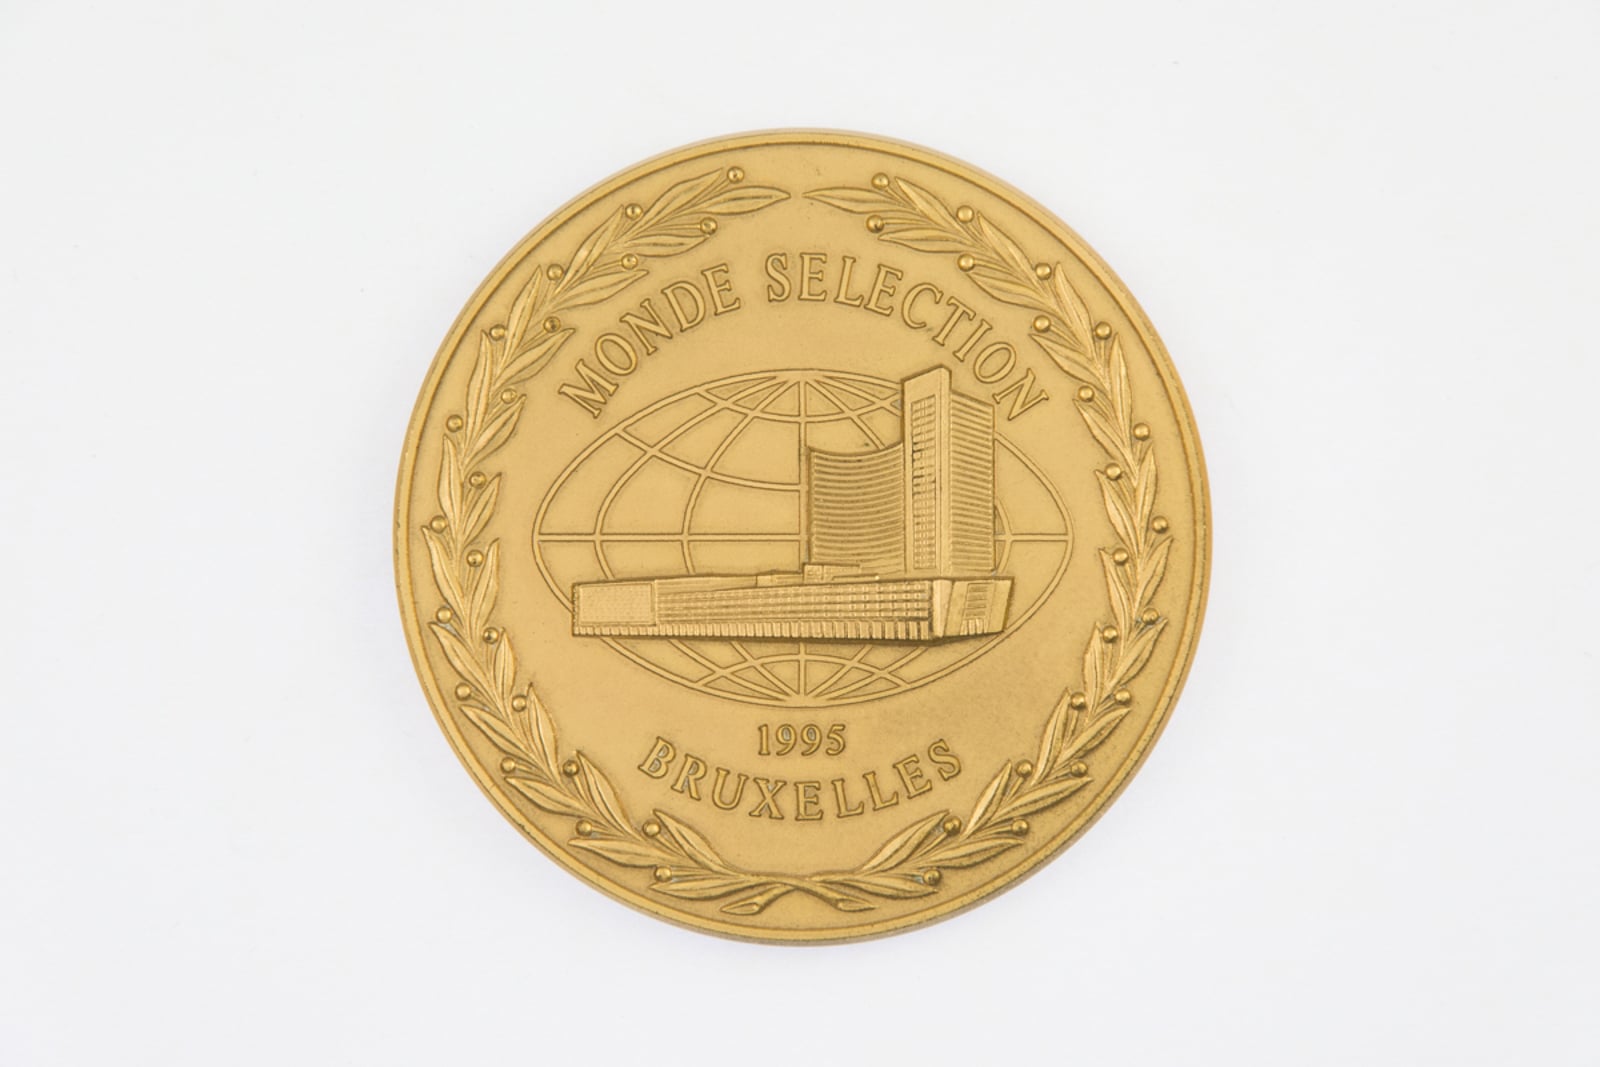 Monde Selection Bruxelles Grande Medaille d'Or 1995